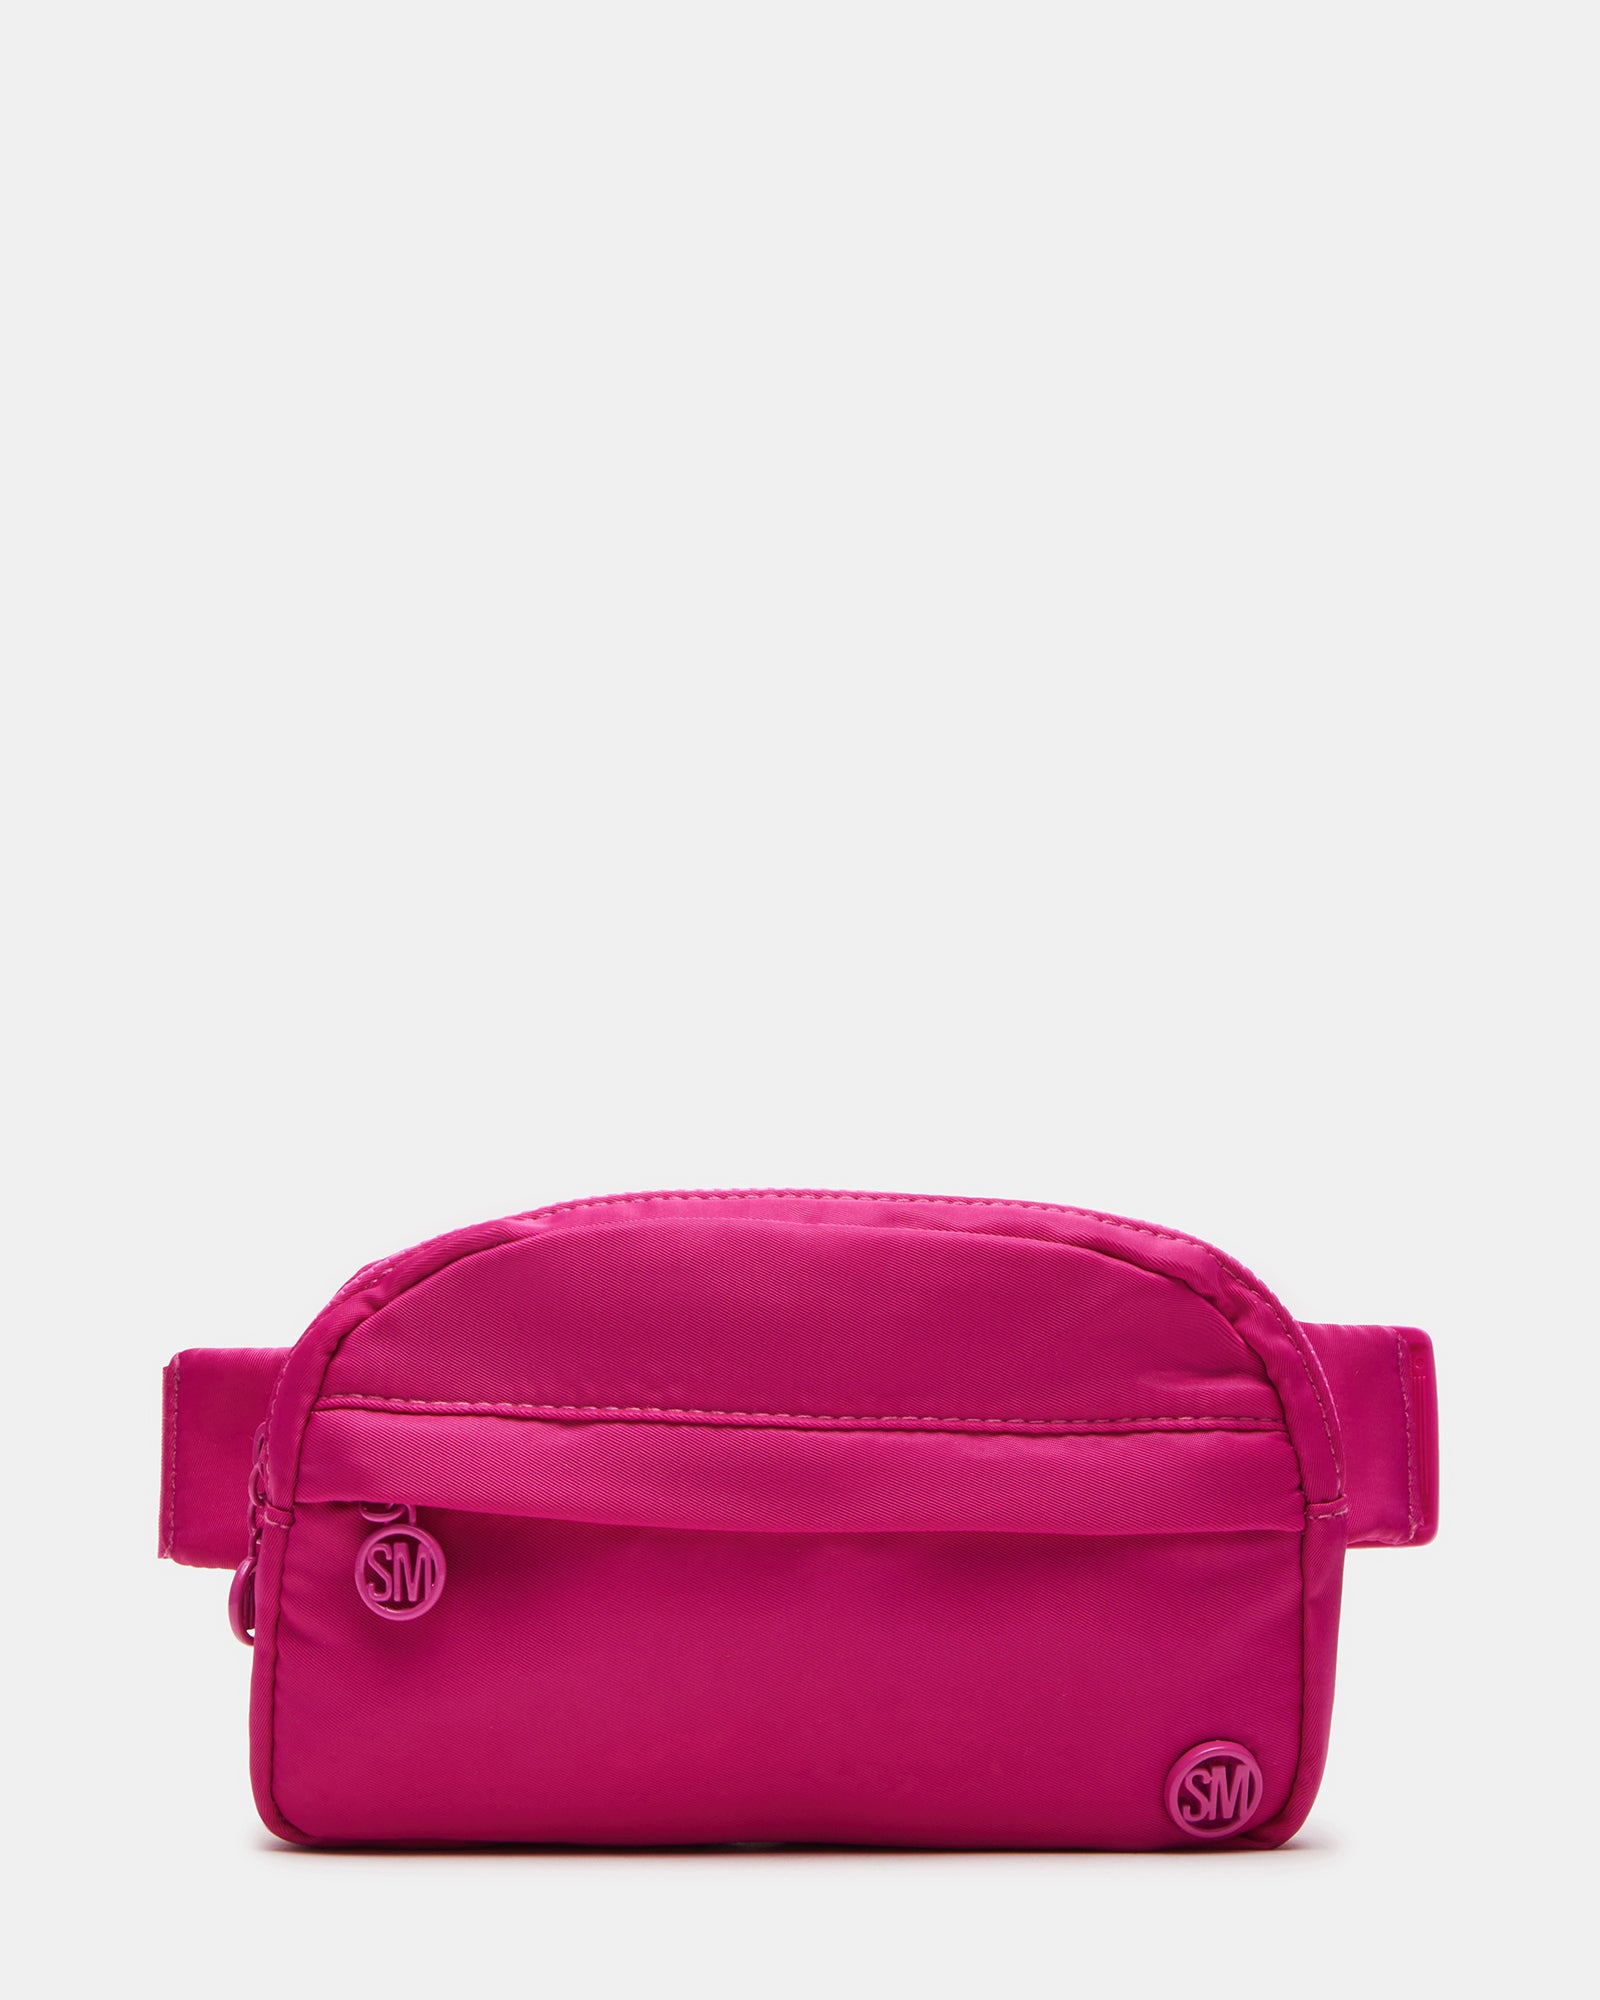 Steve Madden Maxima Convertible Belt Bag in Hot Pink